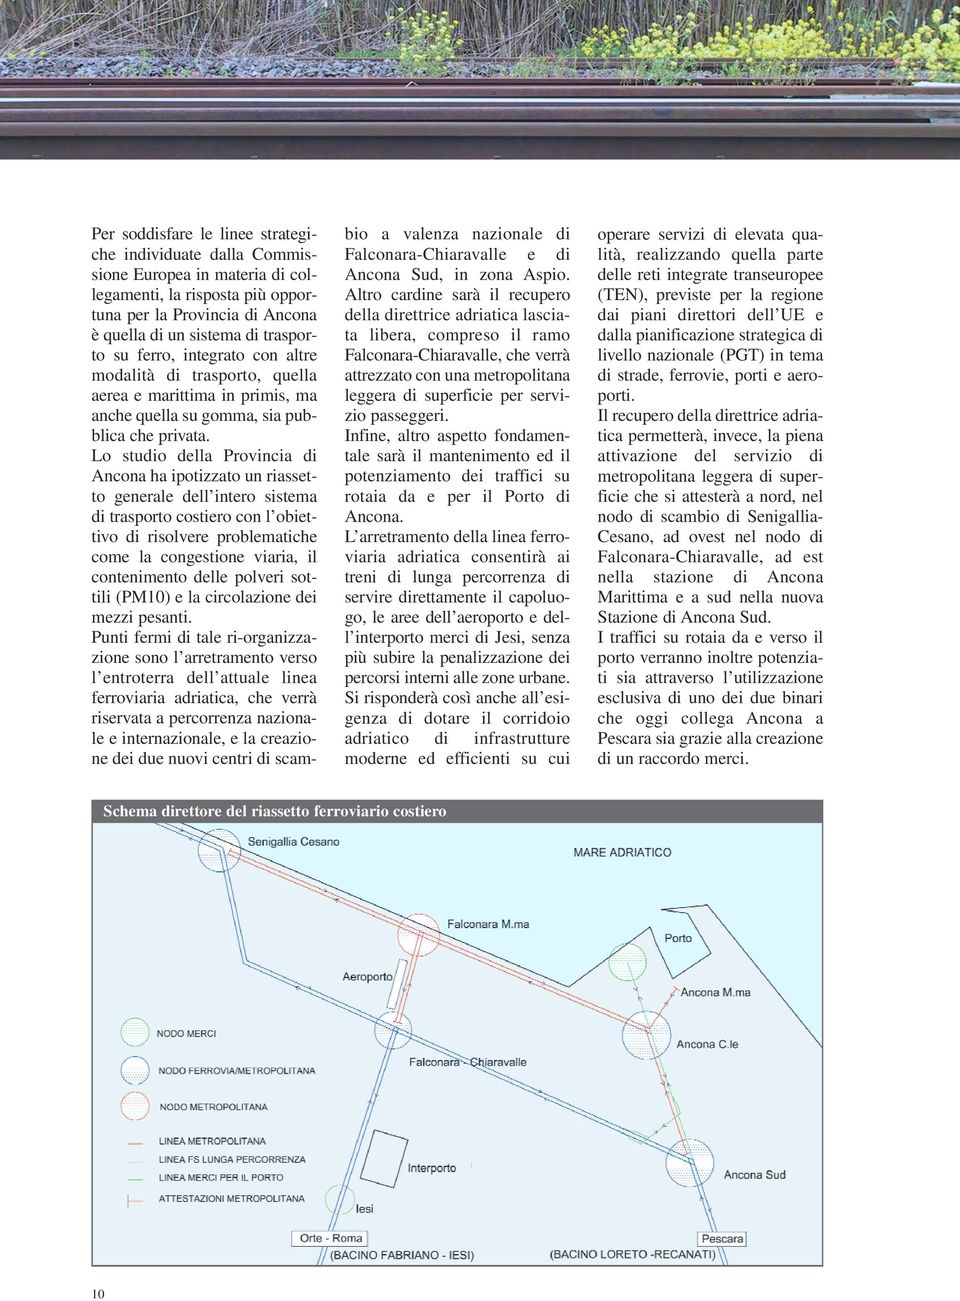 Lo studio della Provincia di Ancona ha ipotizzato un riassetto generale dell intero sistema di trasporto costiero con l obiettivo di risolvere problematiche come la congestione viaria, il